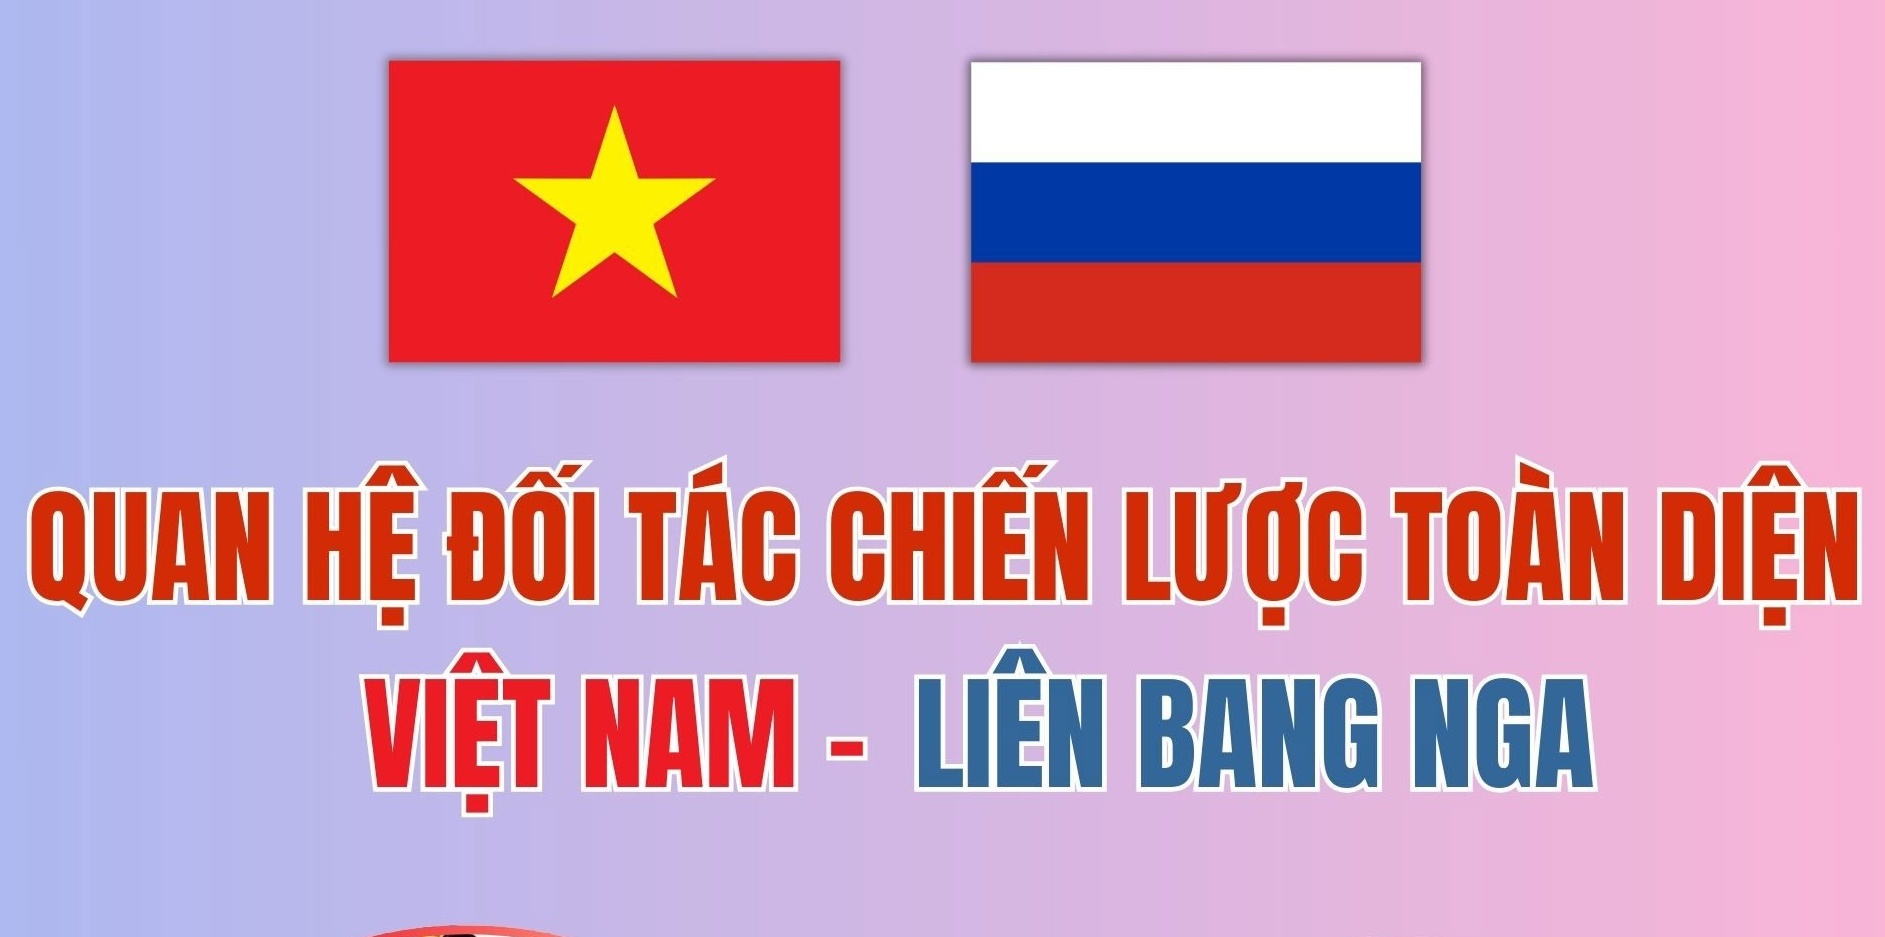 Infographic: Quan hệ Đối tác chiến lược toàn diện Việt Nam - Liên bang Nga